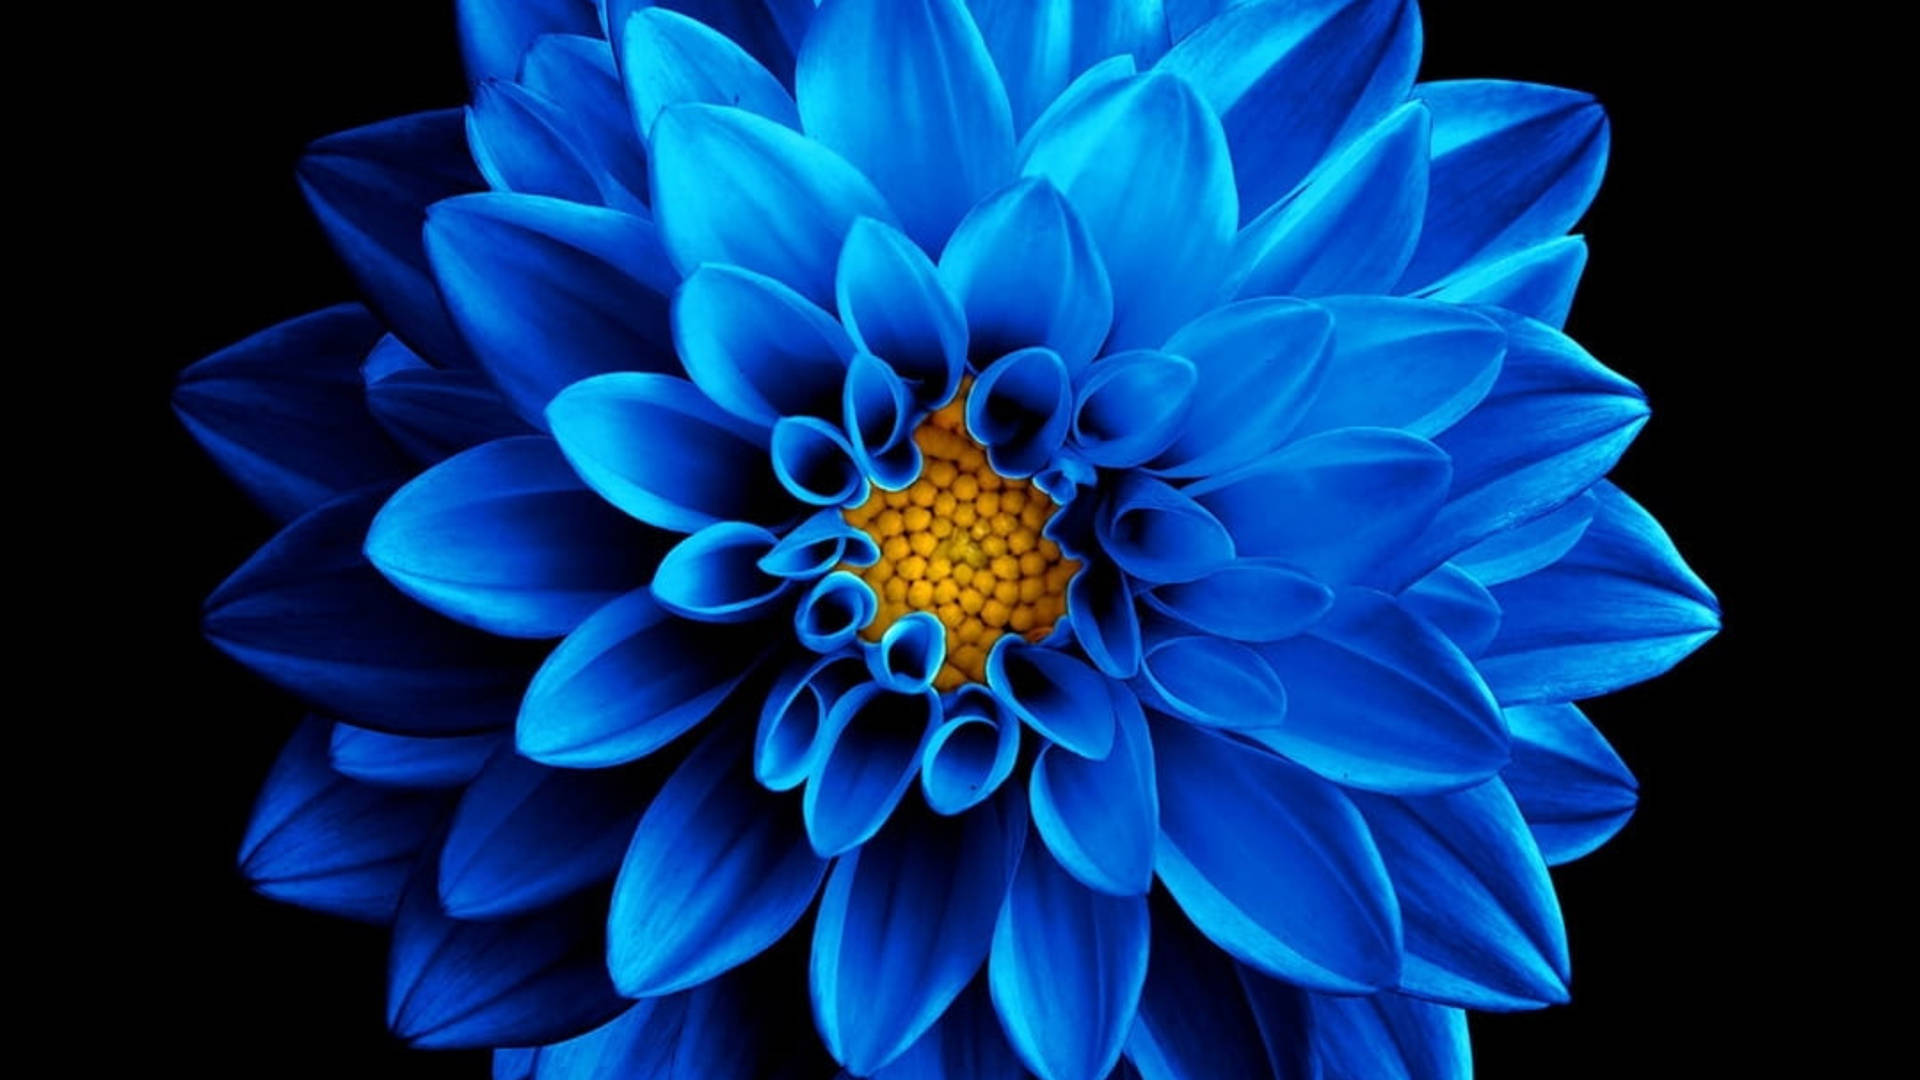 Amoled Blue Chrysanthemum 4k Background